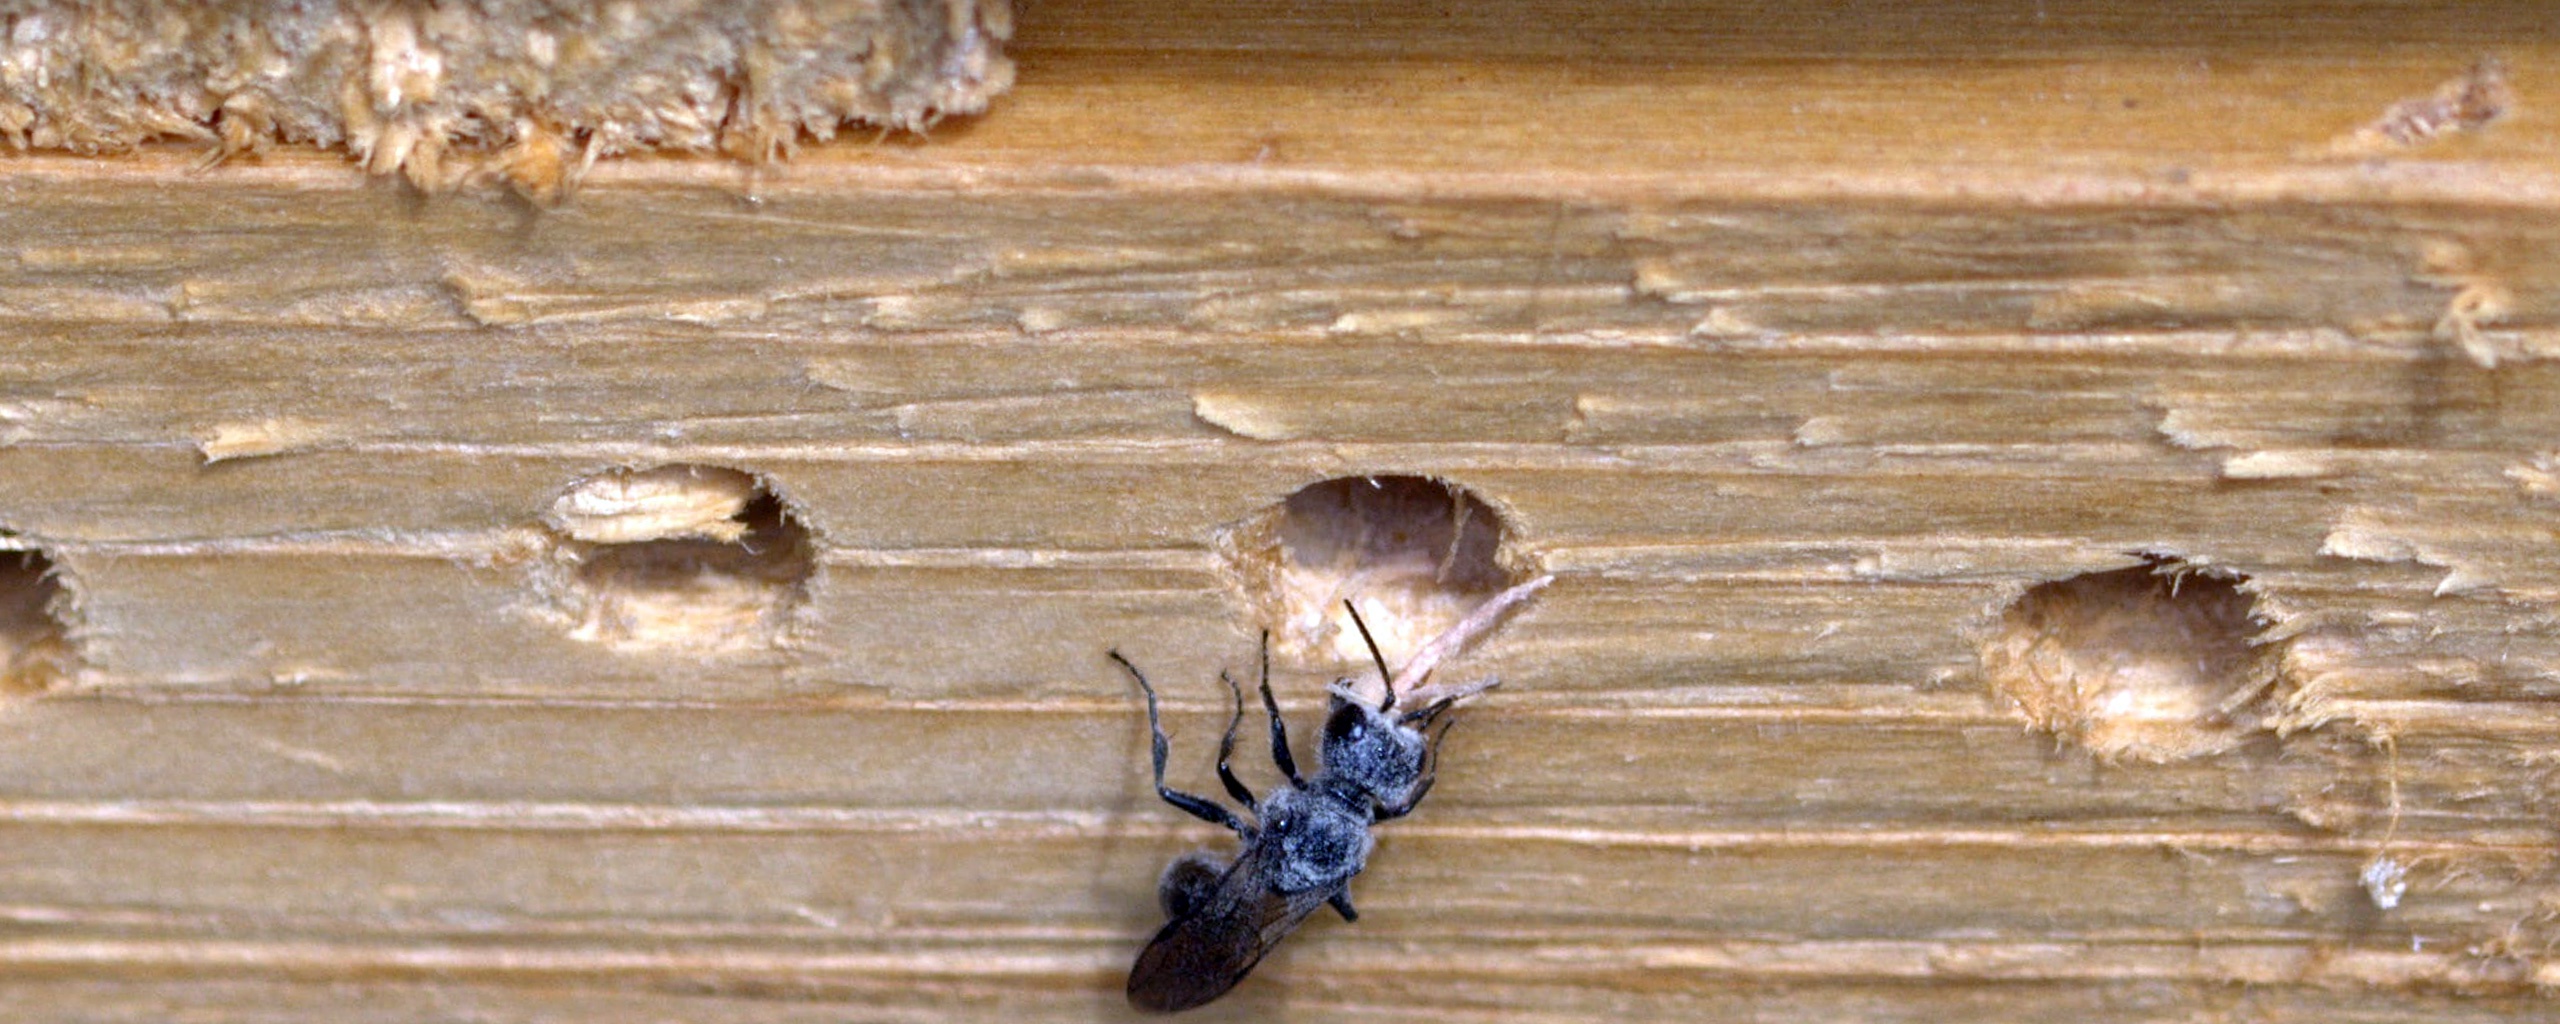 Les traitements et moyens préventifs contre les fourmis